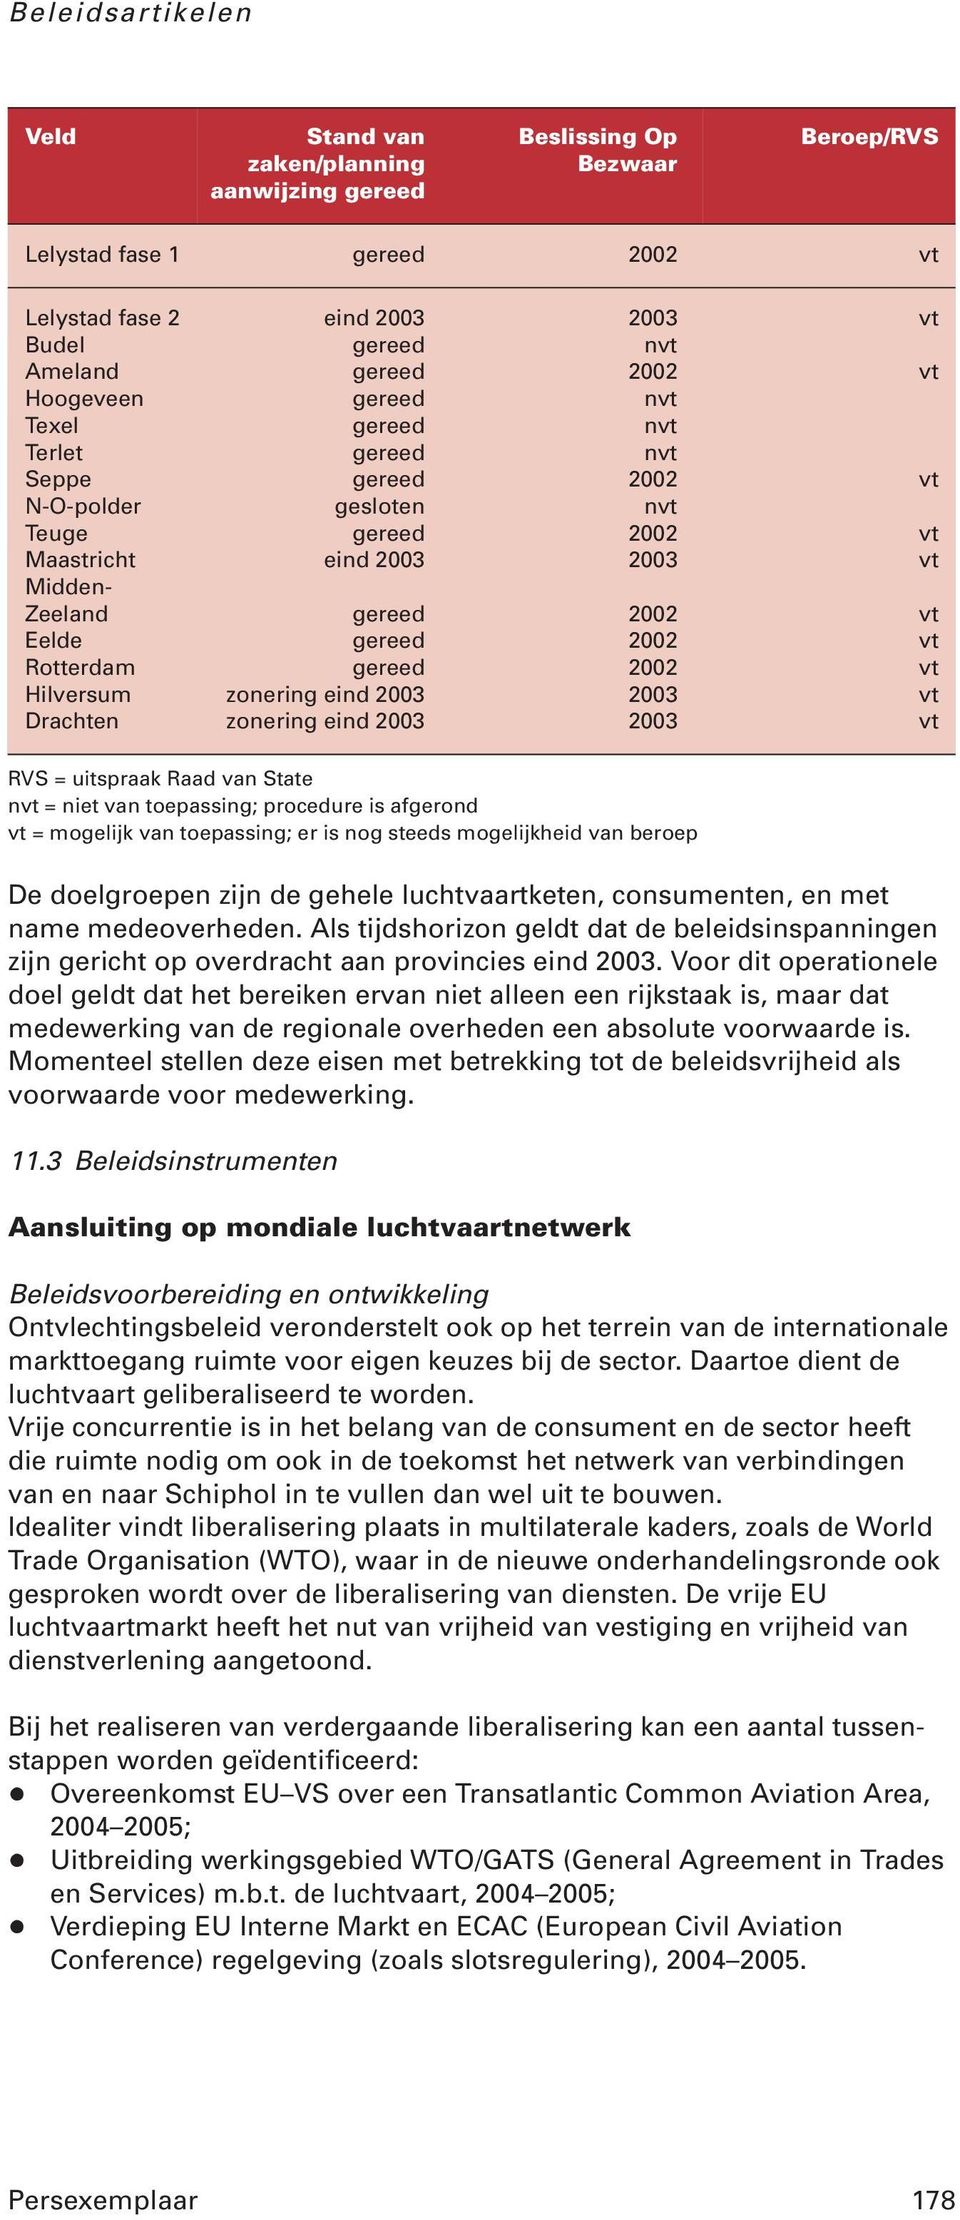 Rotterdam gereed 2002 vt Hilversum zonering eind 2003 2003 vt Drachten zonering eind 2003 2003 vt RVS = uitspraak Raad van State nvt = niet van toepassing; procedure is afgerond vt = mogelijk van